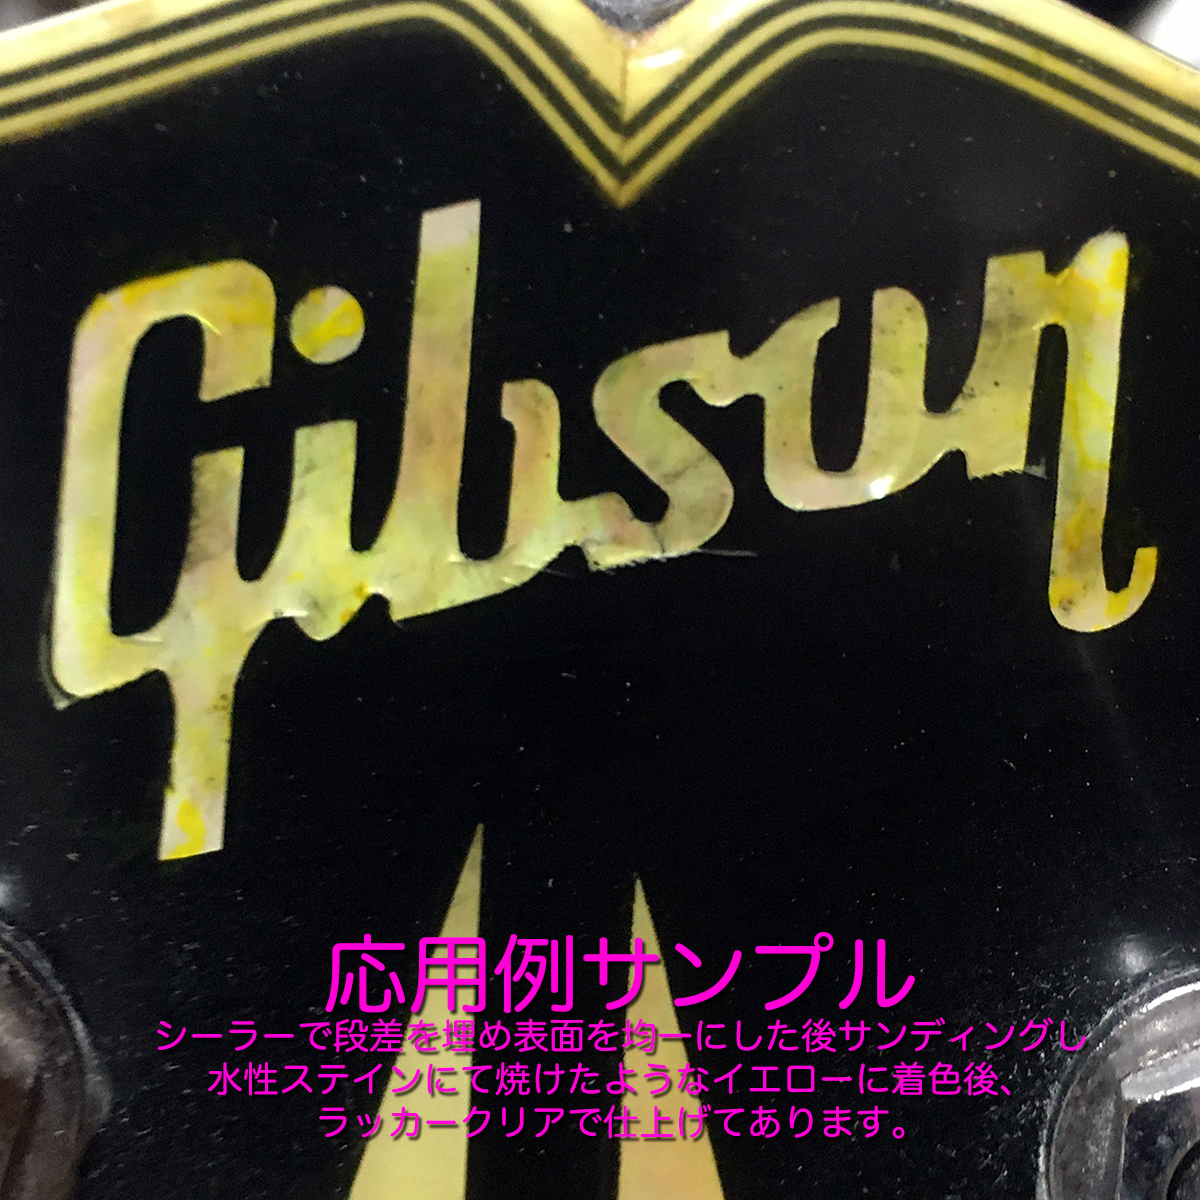 Gibsonhiskore серия Logo & вода приклеивание Les Paul переводная картинка * комплект 